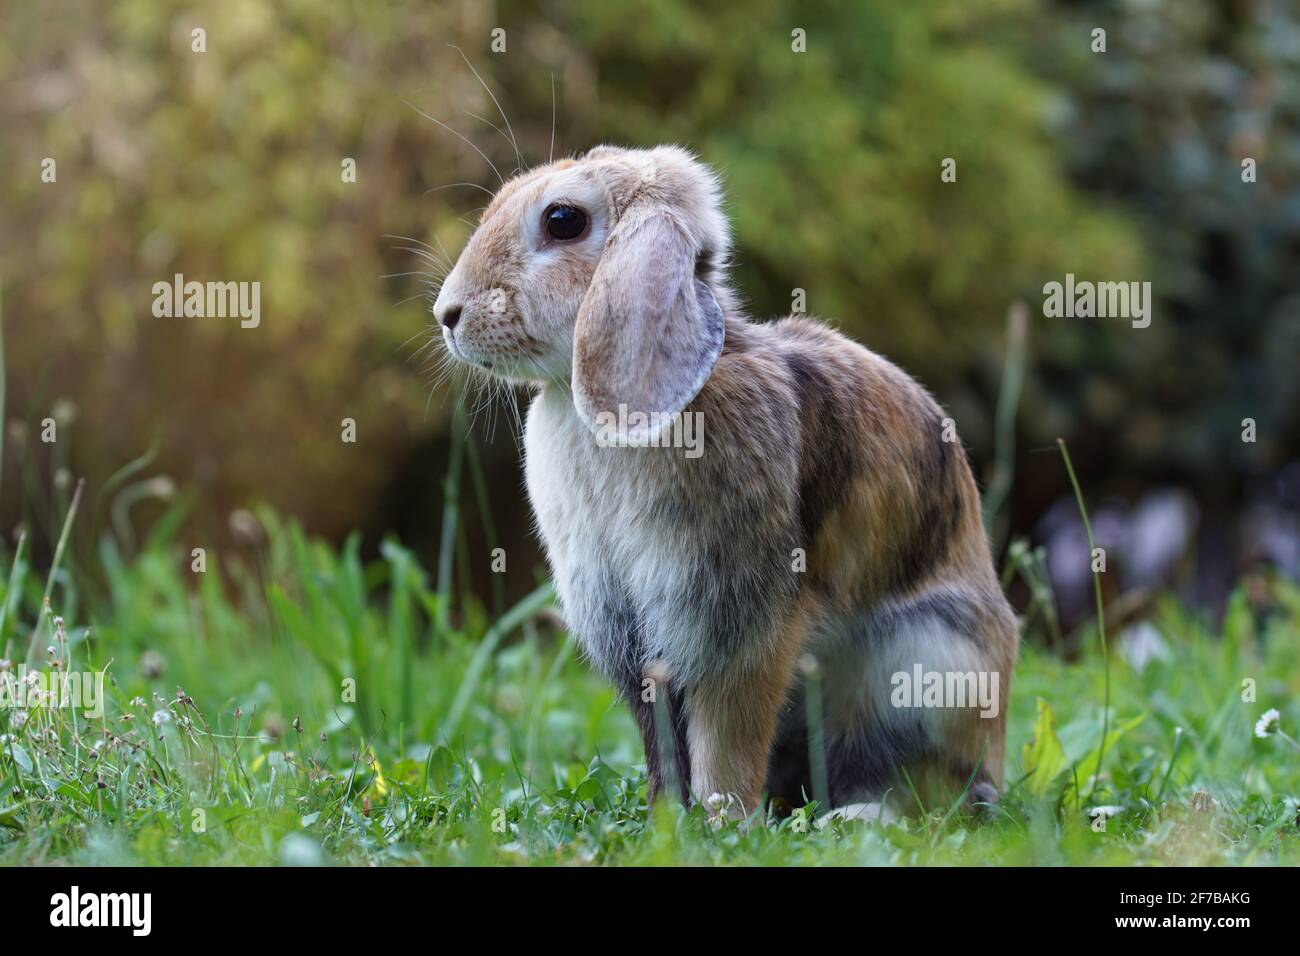 lop eared dwarf ram rabbit sitting on meadow in attentive position Stock Photo